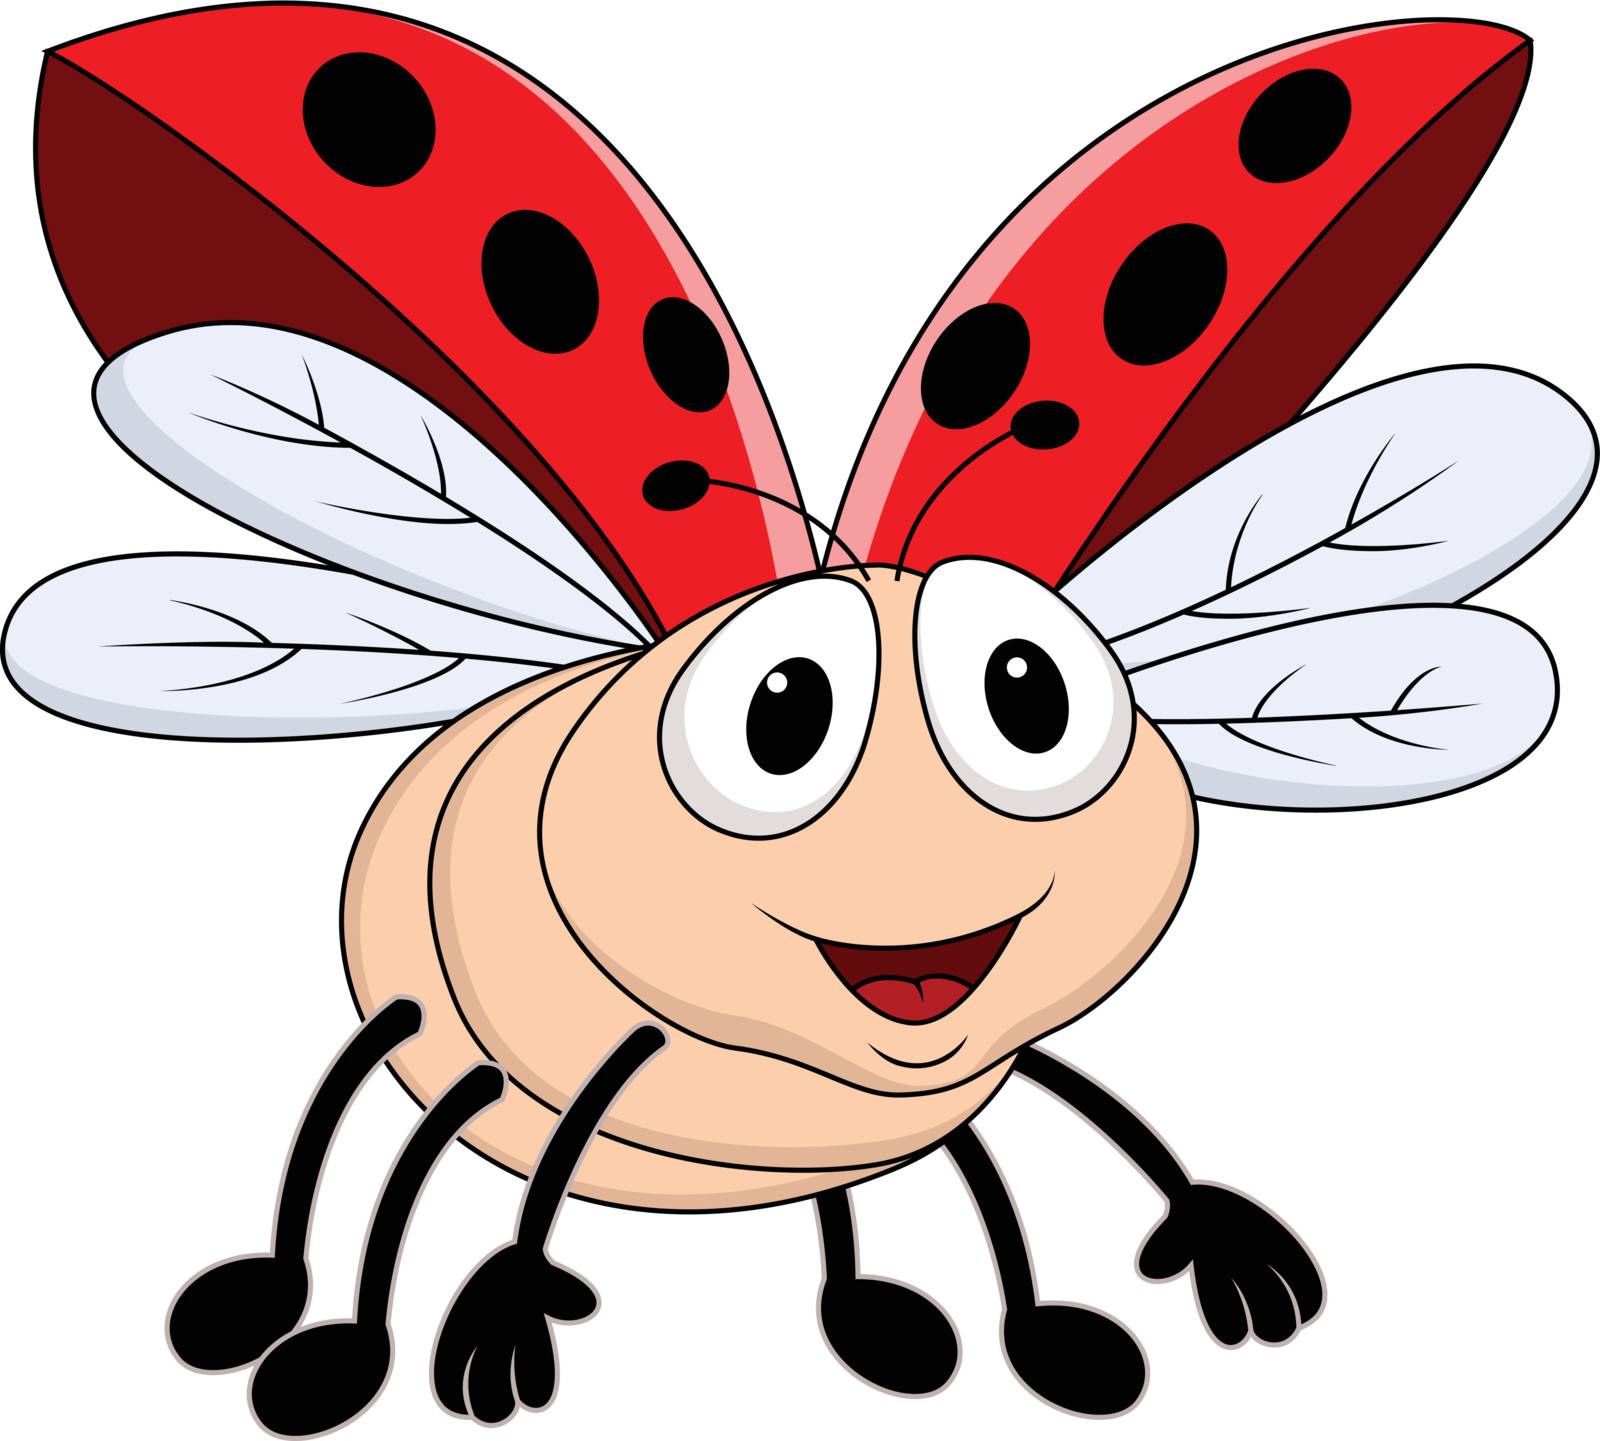 Lady bug flying by Matamu